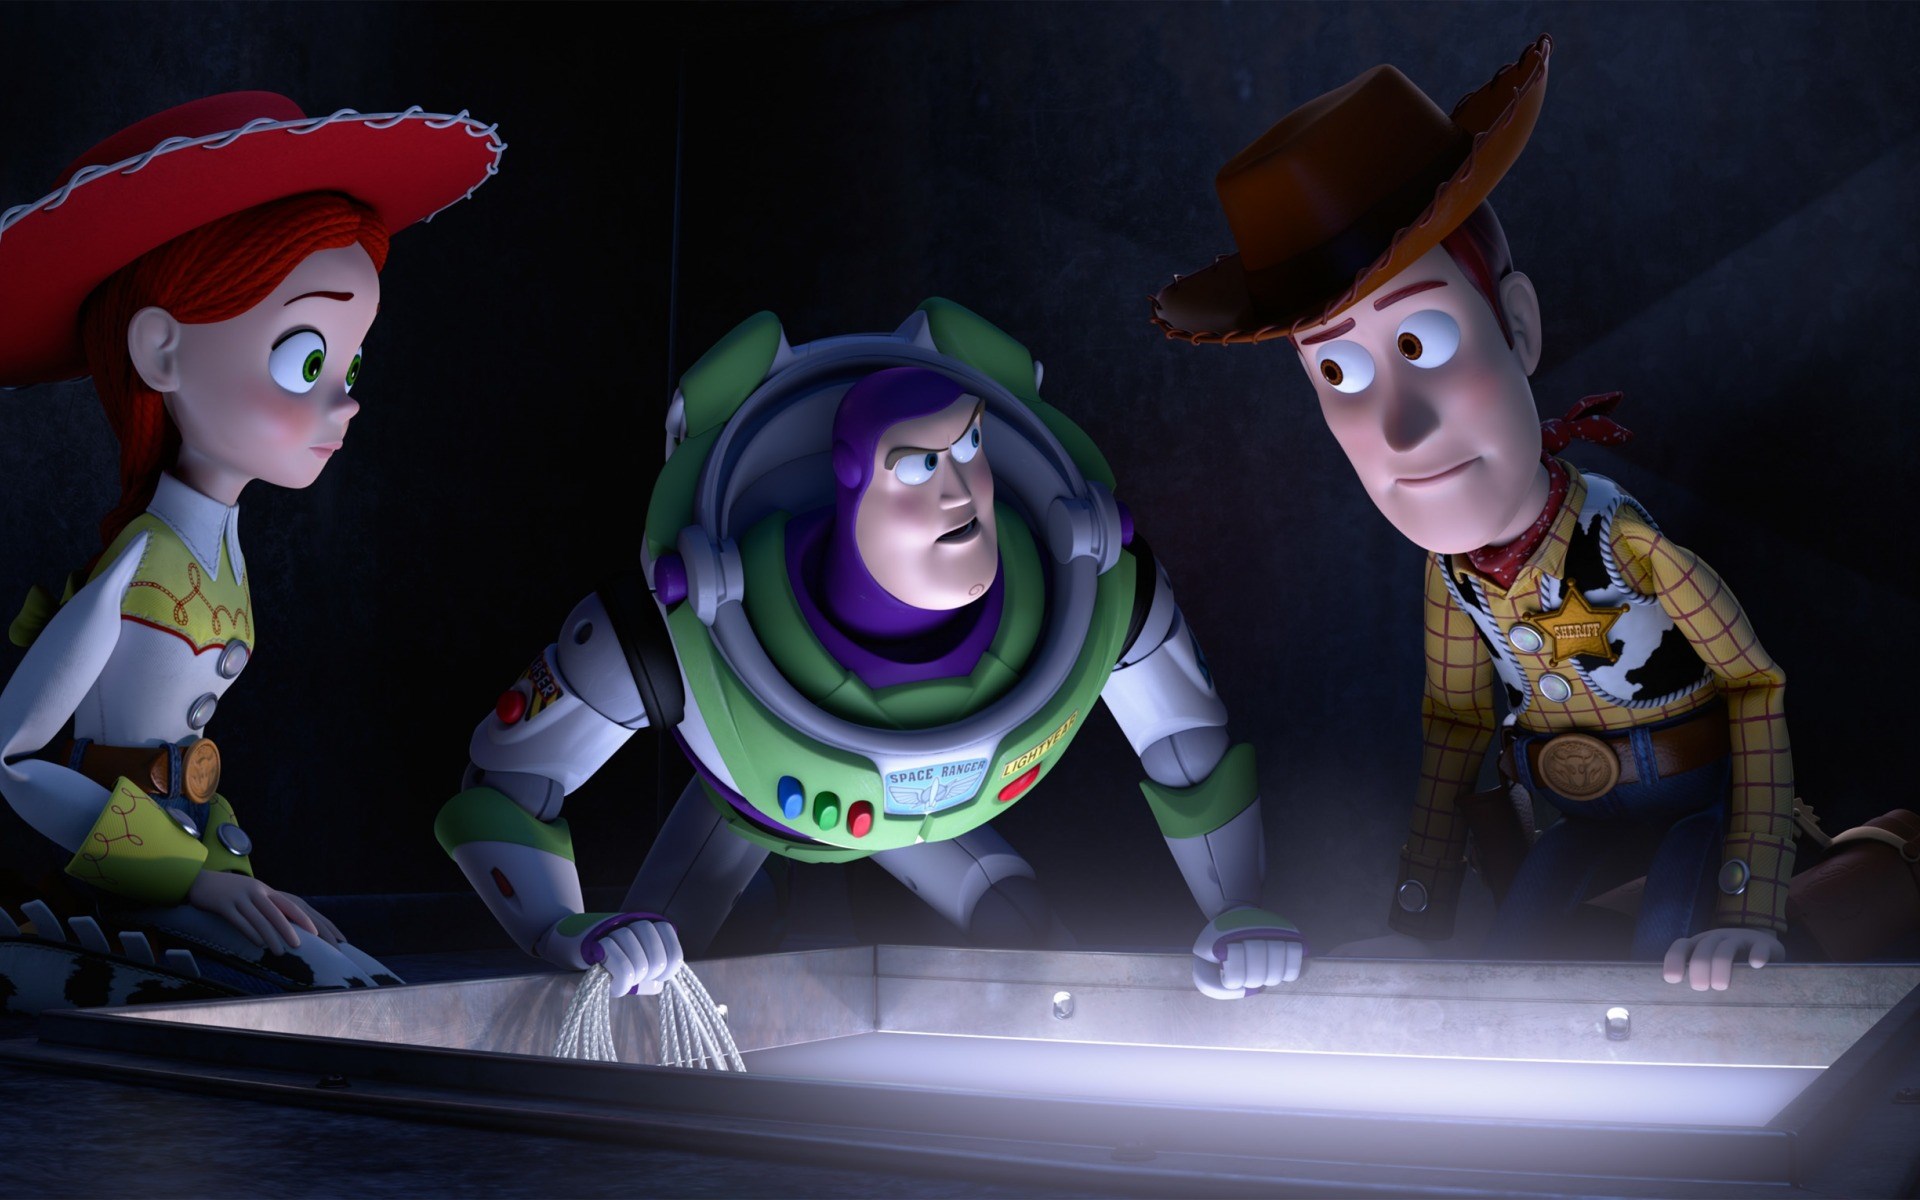 download wallpaper: Toy Story 2 – Woody, Buzz Lightyear en Jessie wallpaper